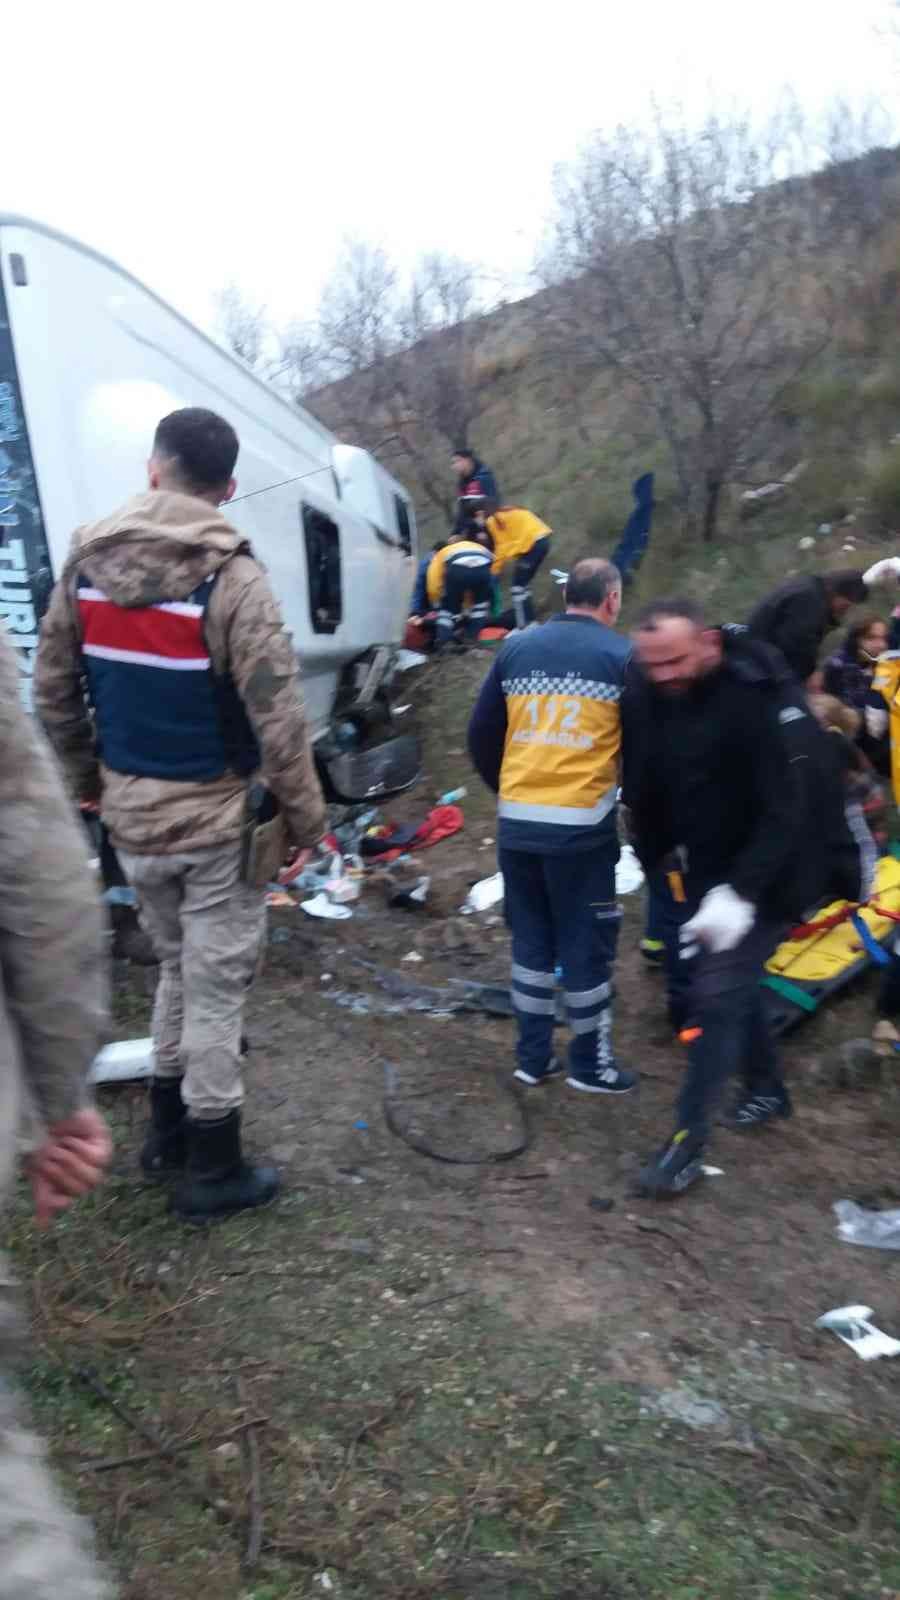 Amasya’da tur midibüsü devrildi: Yaralılar var #amasya